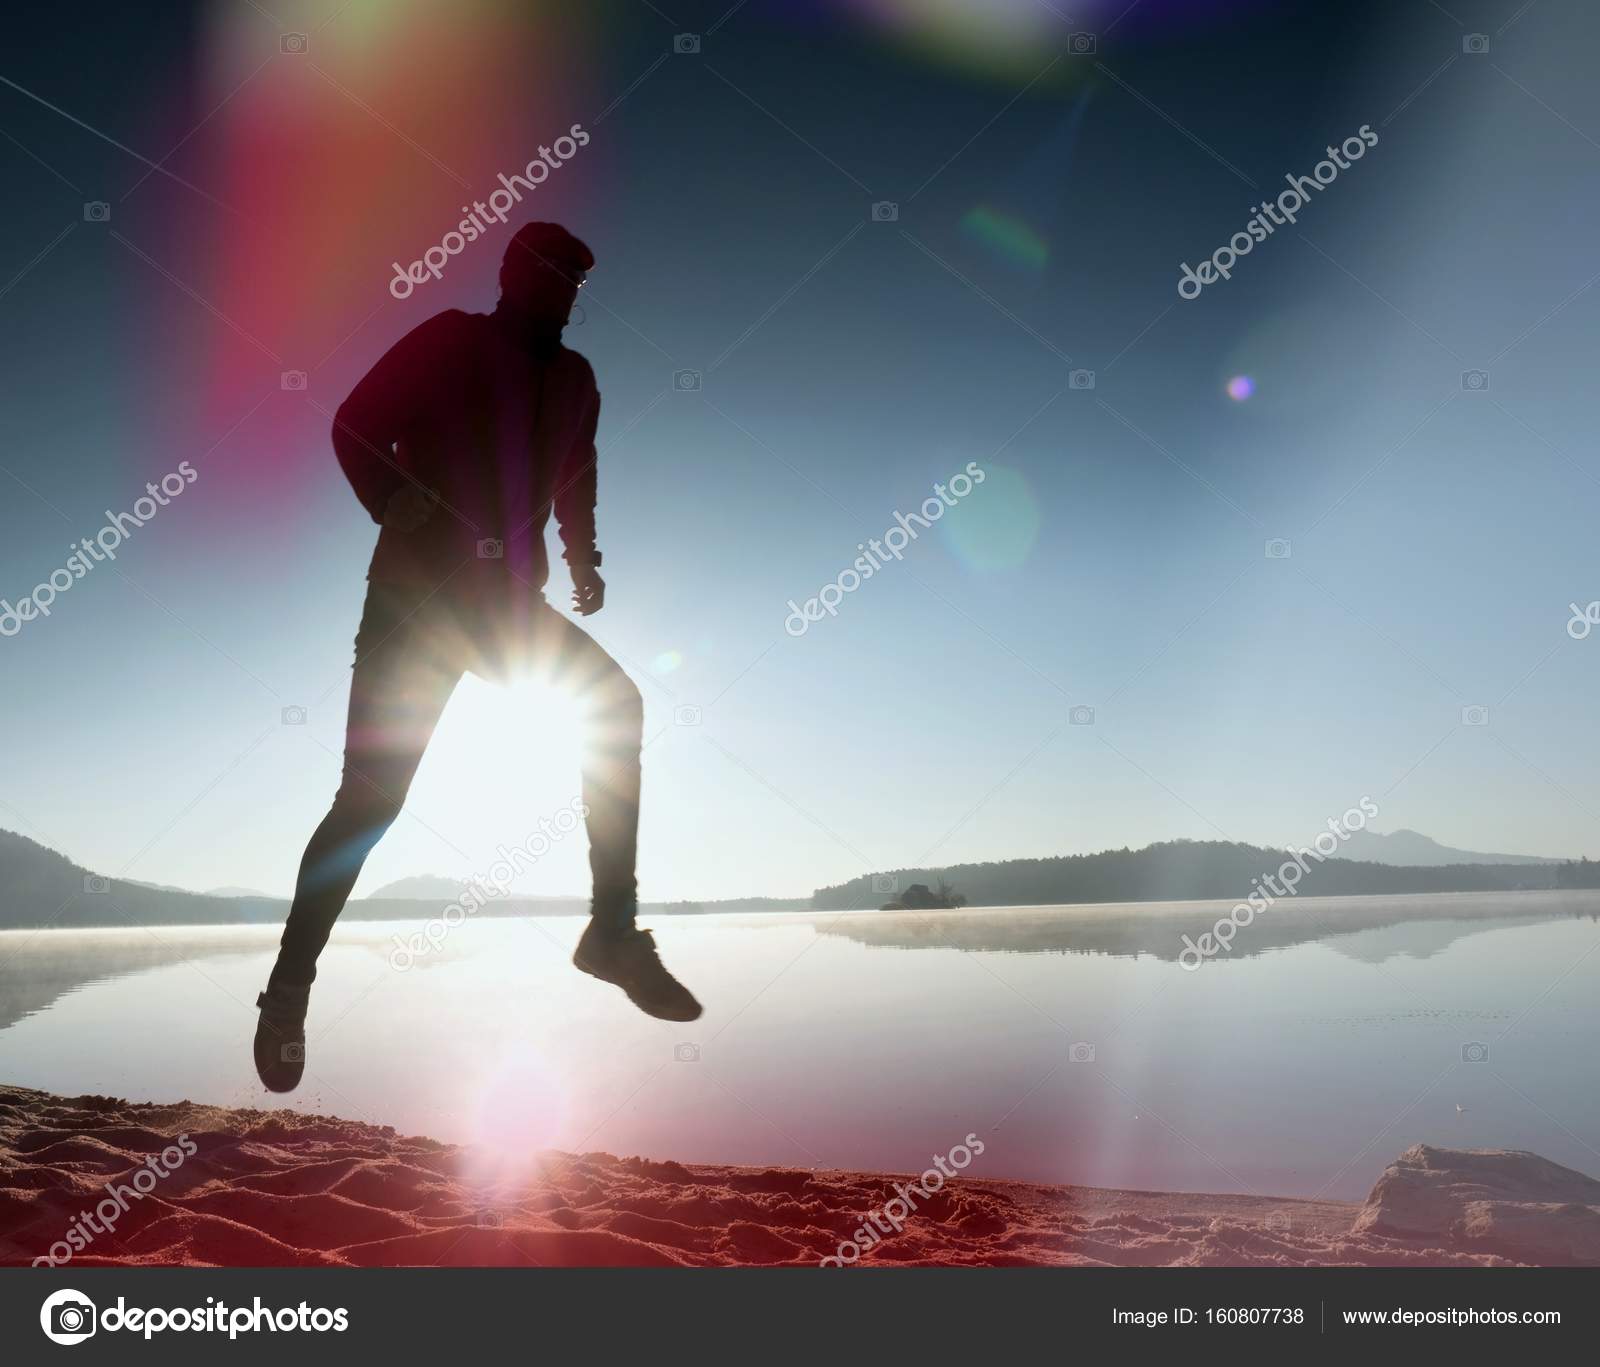 Leakage of light in the lens. Exercising man silhouette on beach ...